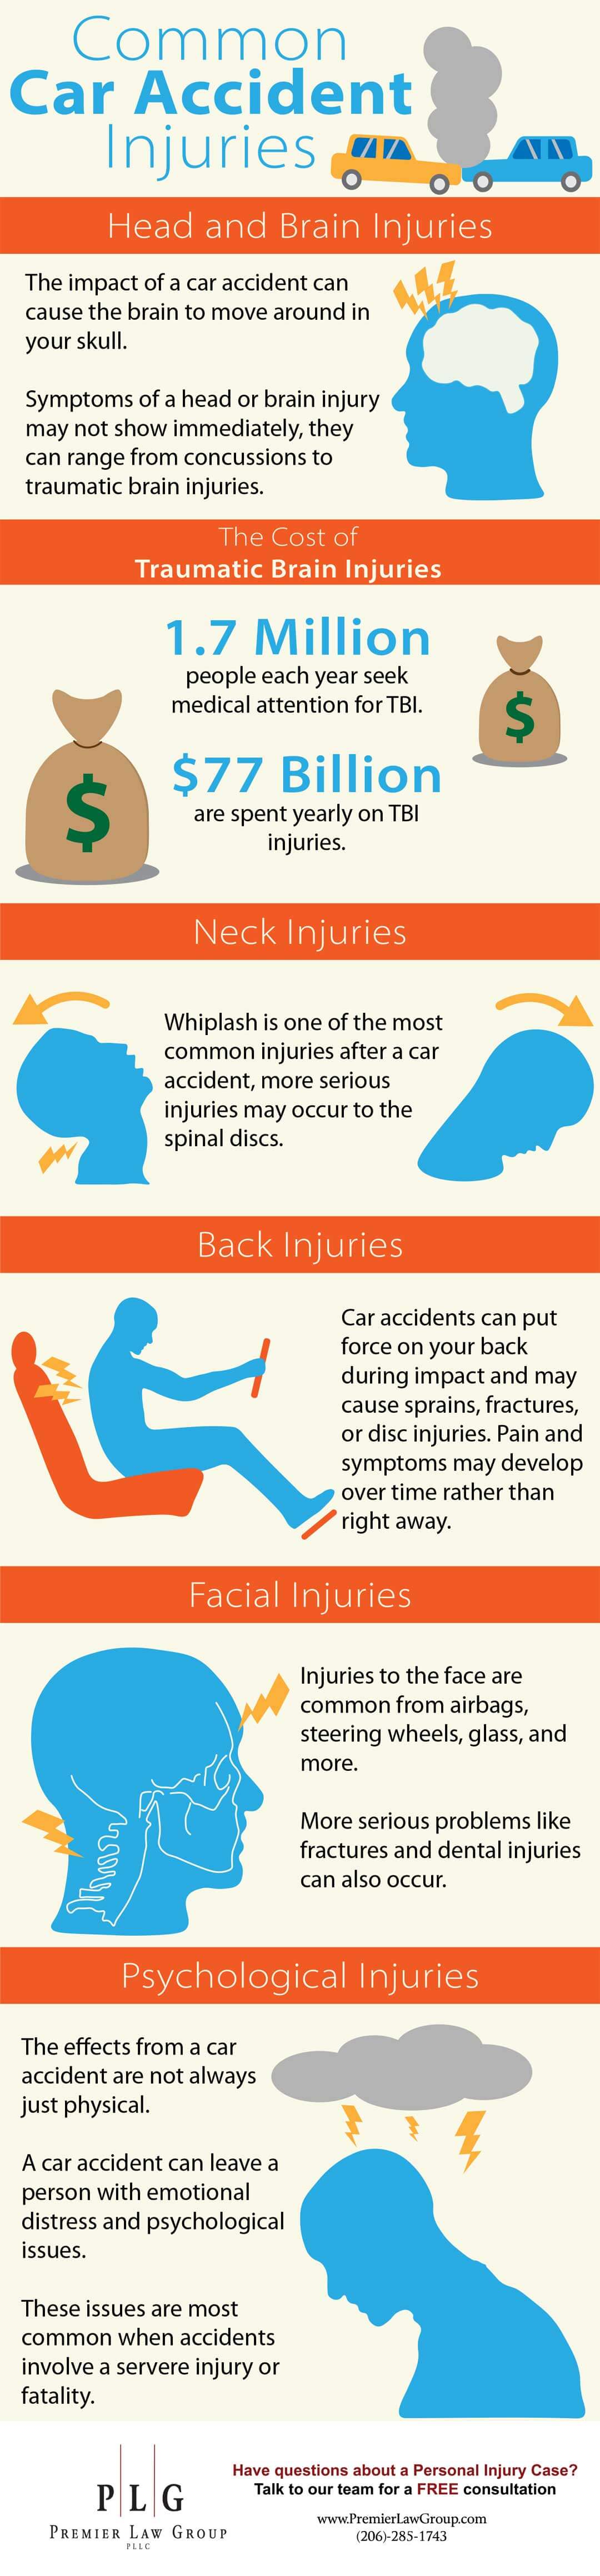 Infografía sobre lesiones comunes por accidentes automovilísticos